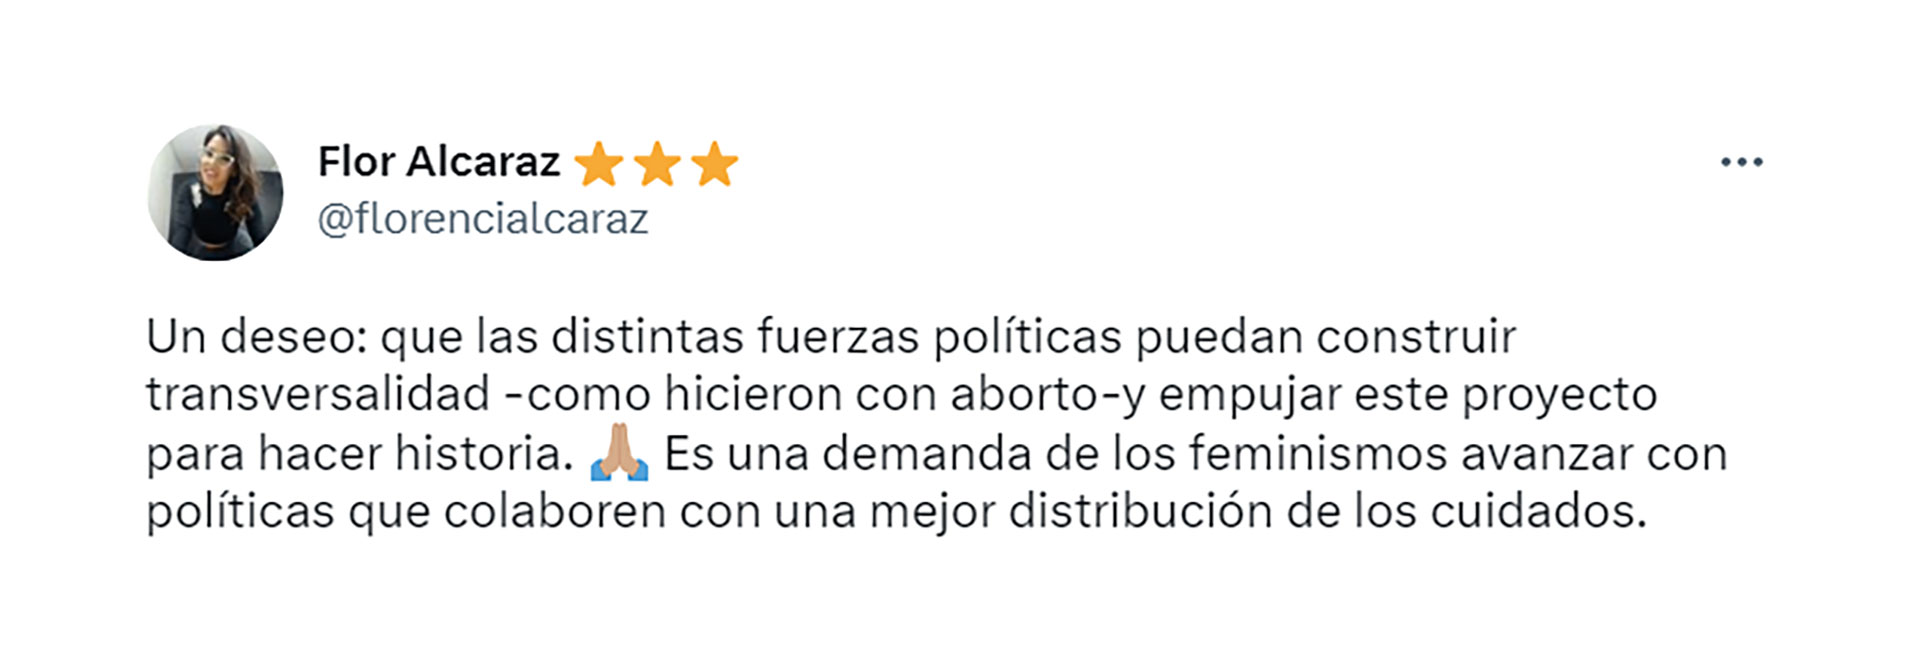 La periodista Flor Alcaraz propone que la transversalidad poltica que se logr con la ley de aborto legal, seguro y gratuito se traslade a la pelea por la ley de cuidados